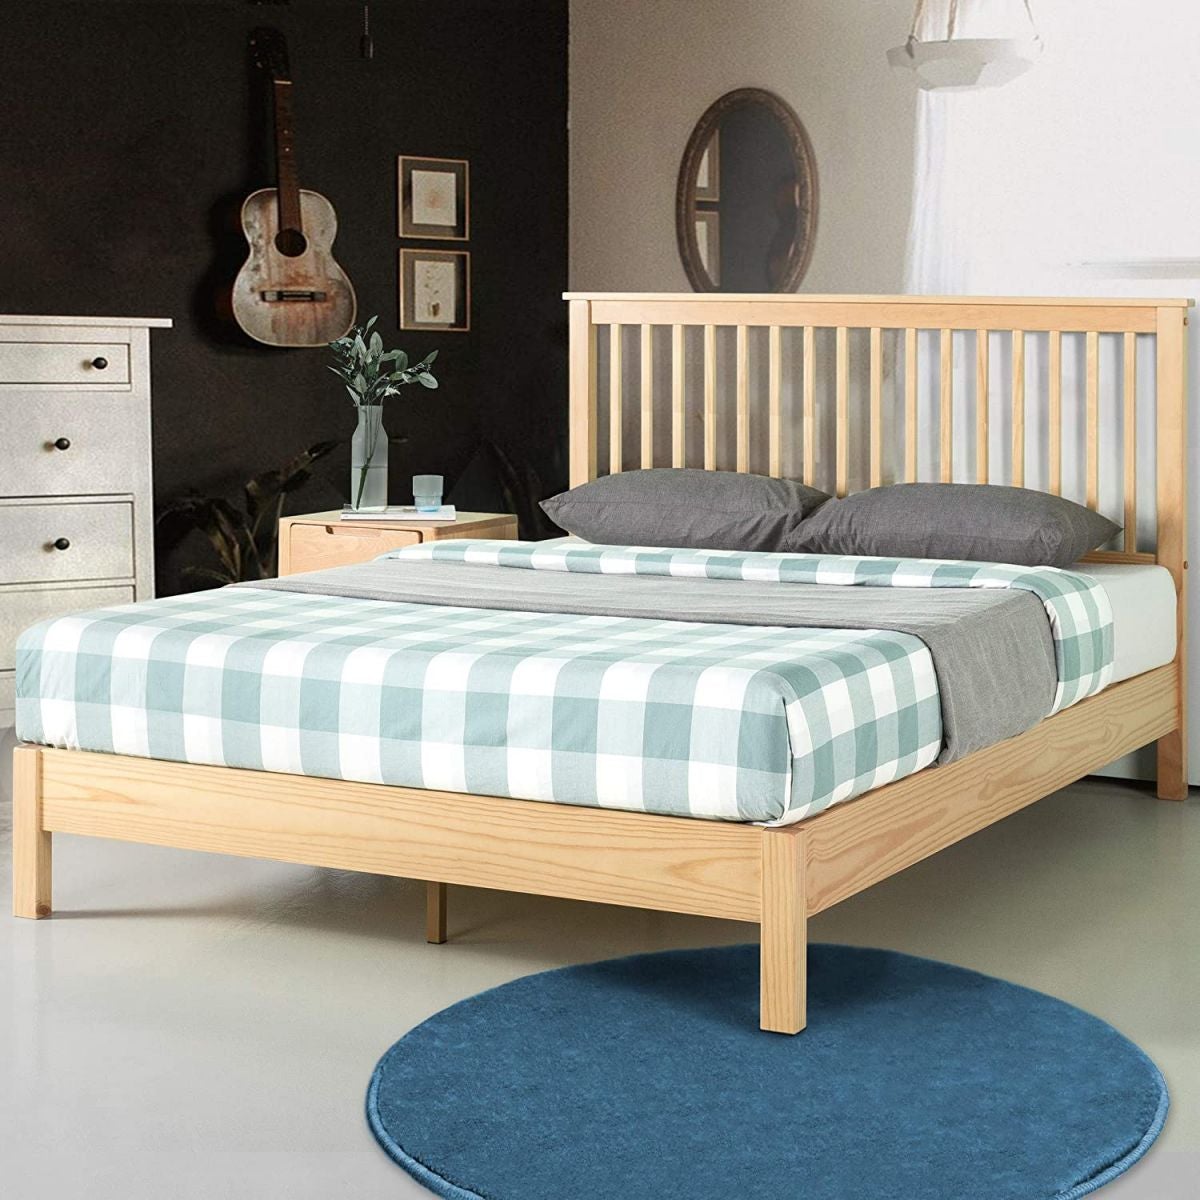 Thiết kế giường ngủ mang đến một cảm giác ấm cúng và đầy phá cách